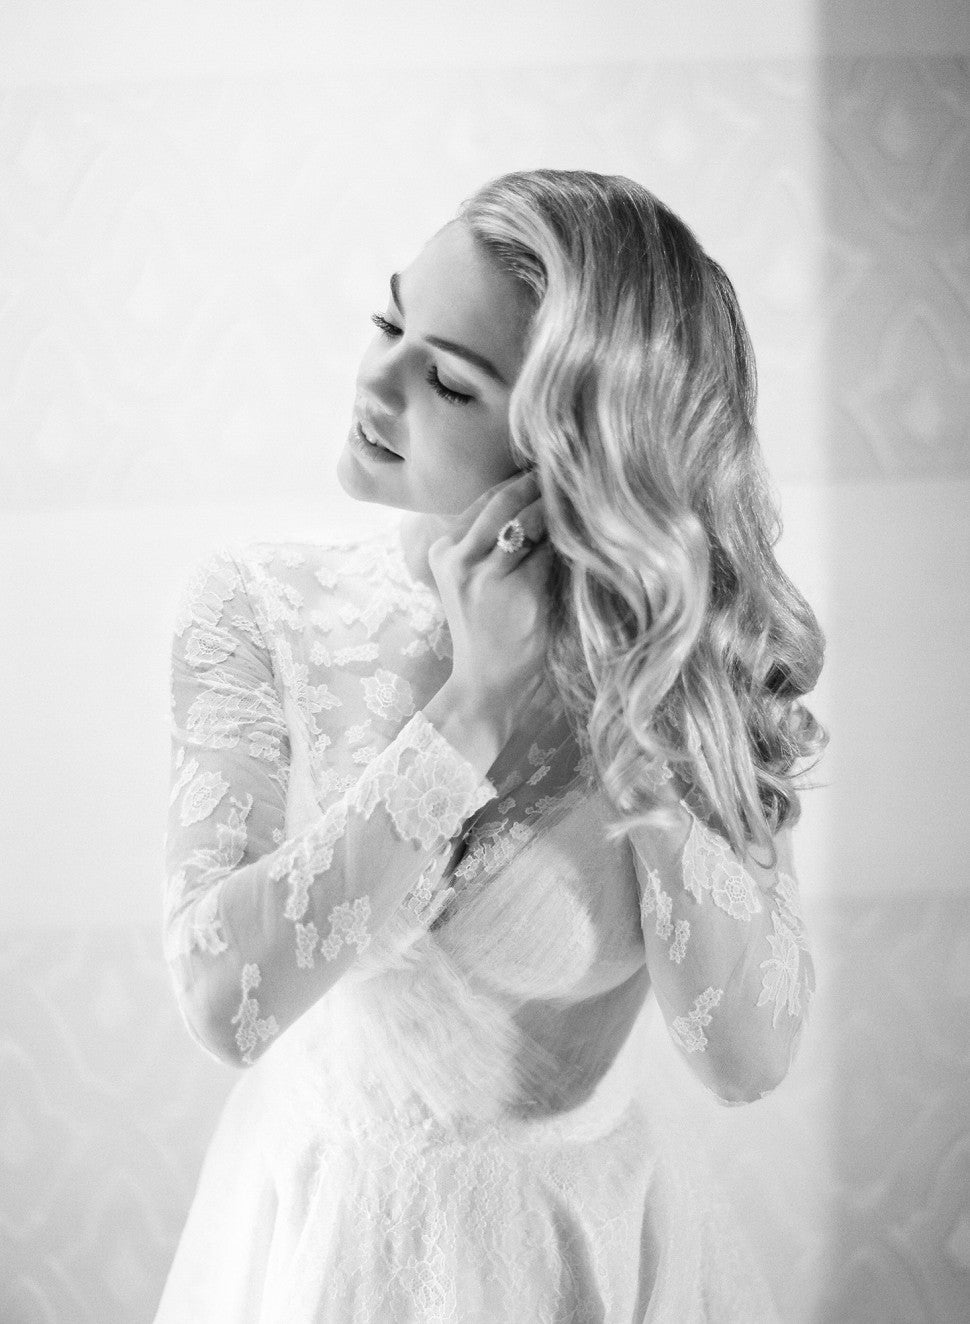 Kate Upton wedding dress - b&w